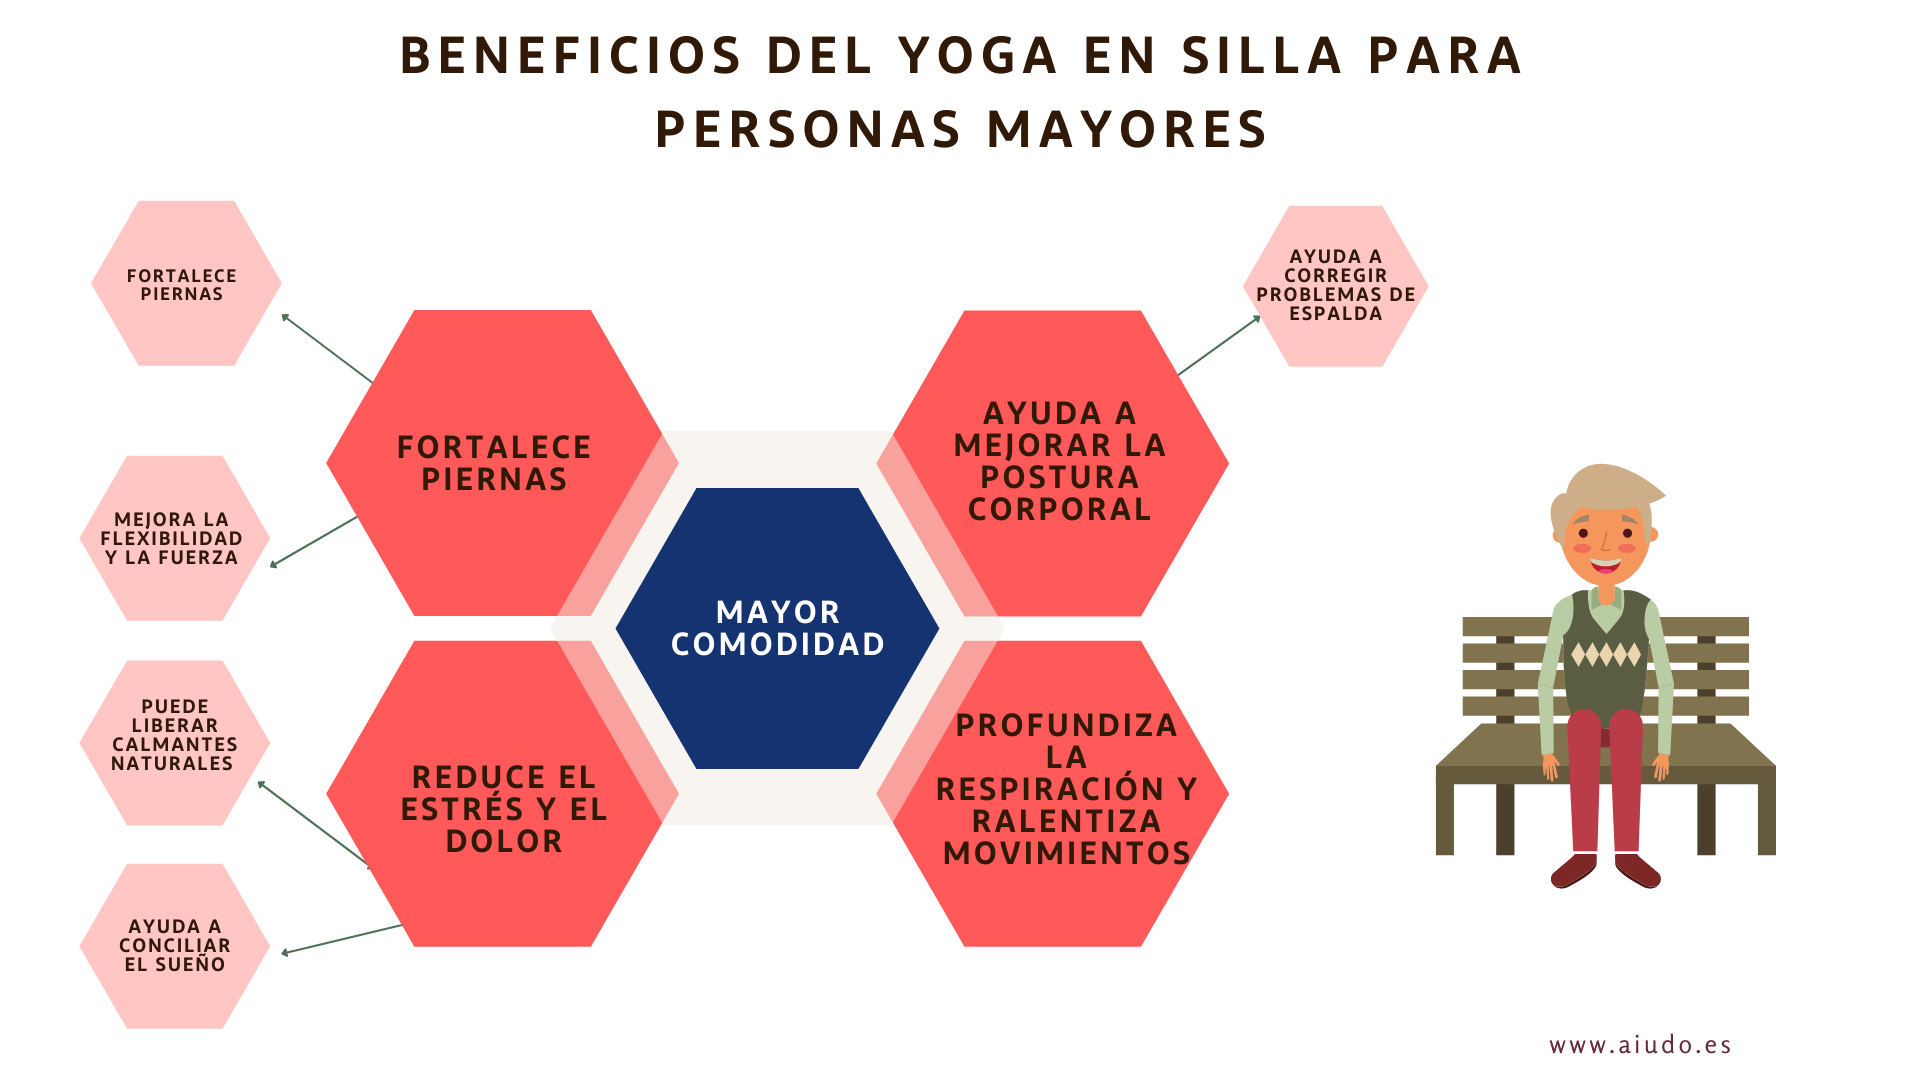 Un mapa mental con los beneficios del yoga para personas mayores: fortalece las piernas, reduce el estrés y el dolor, profundiza la respiración y ralentiza movimientos, mayor comodidad y ayuda a mejorar la postura corporal.